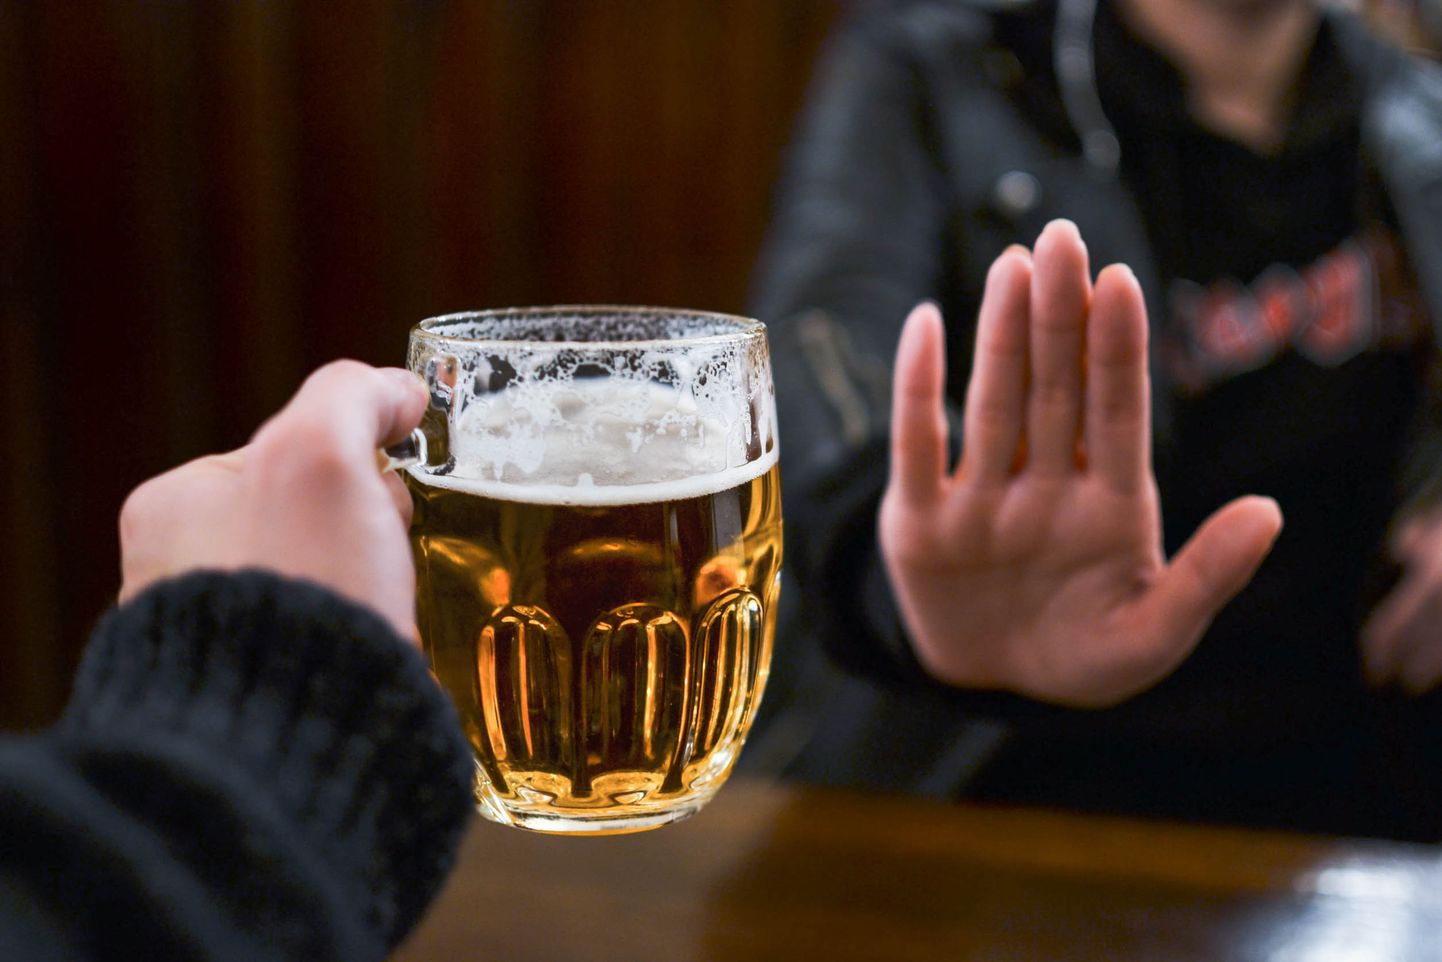 Uuringud on näidanud, et alkoholi tarbimine ka väiksemas koguses mõjub aju hallainele